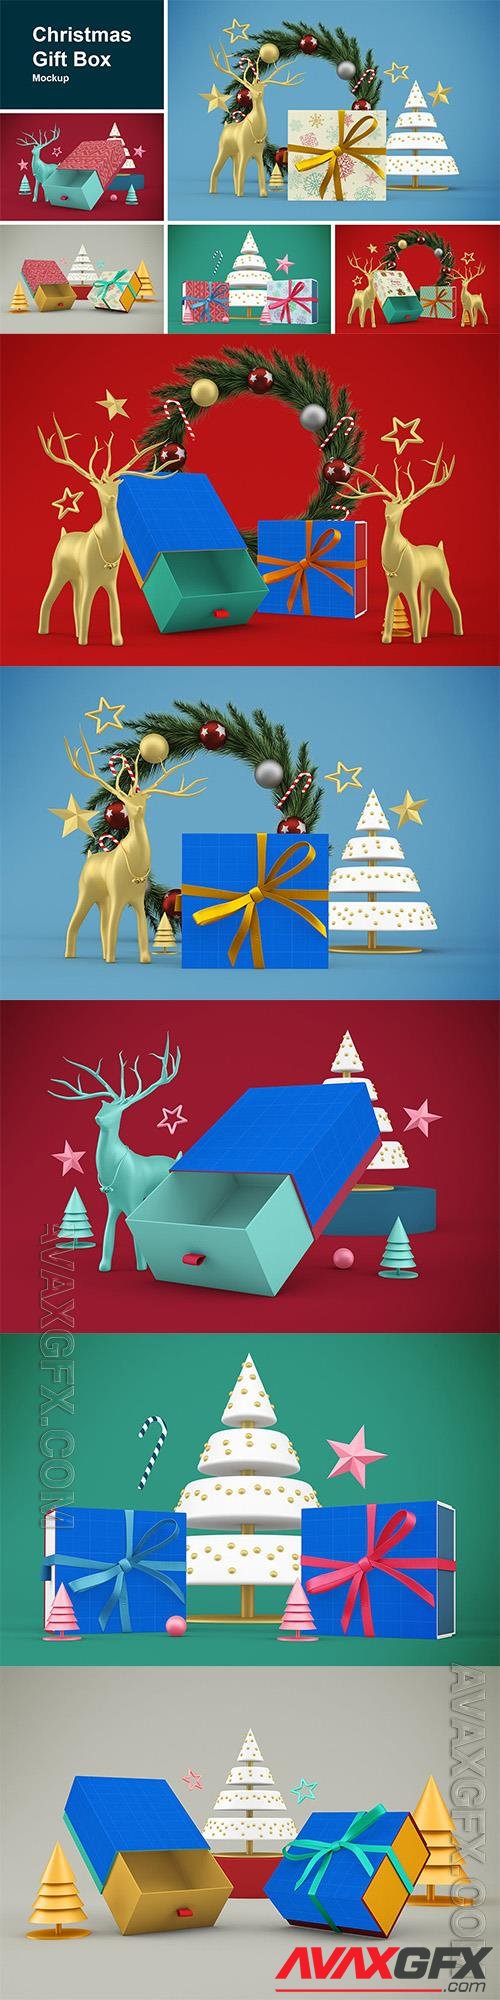 Christmas Gift Box A3TSGC4